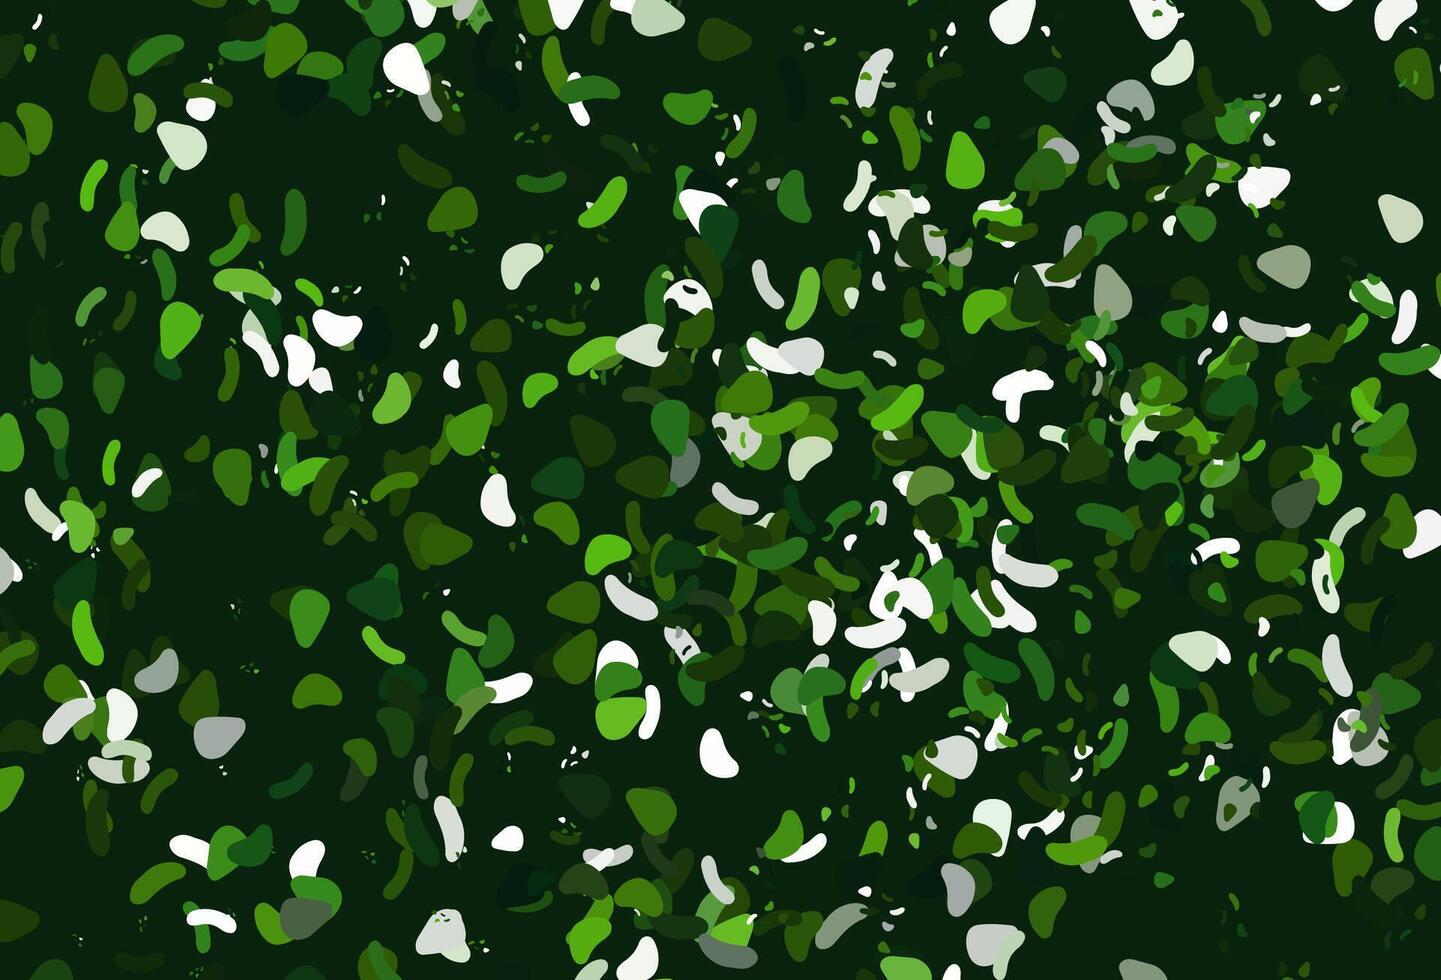 sfondo vettoriale verde chiaro con forme astratte.